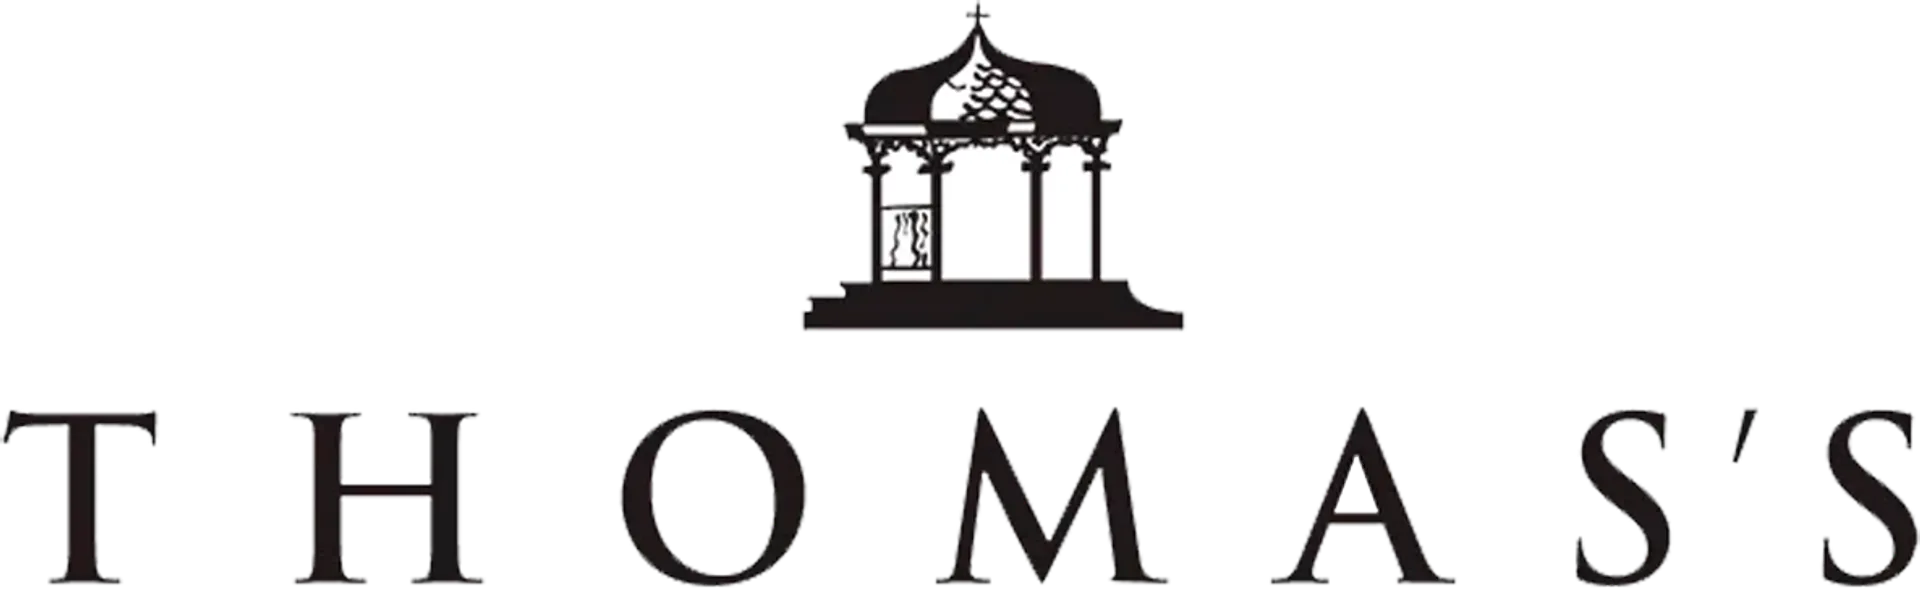 THOMAS'S logo